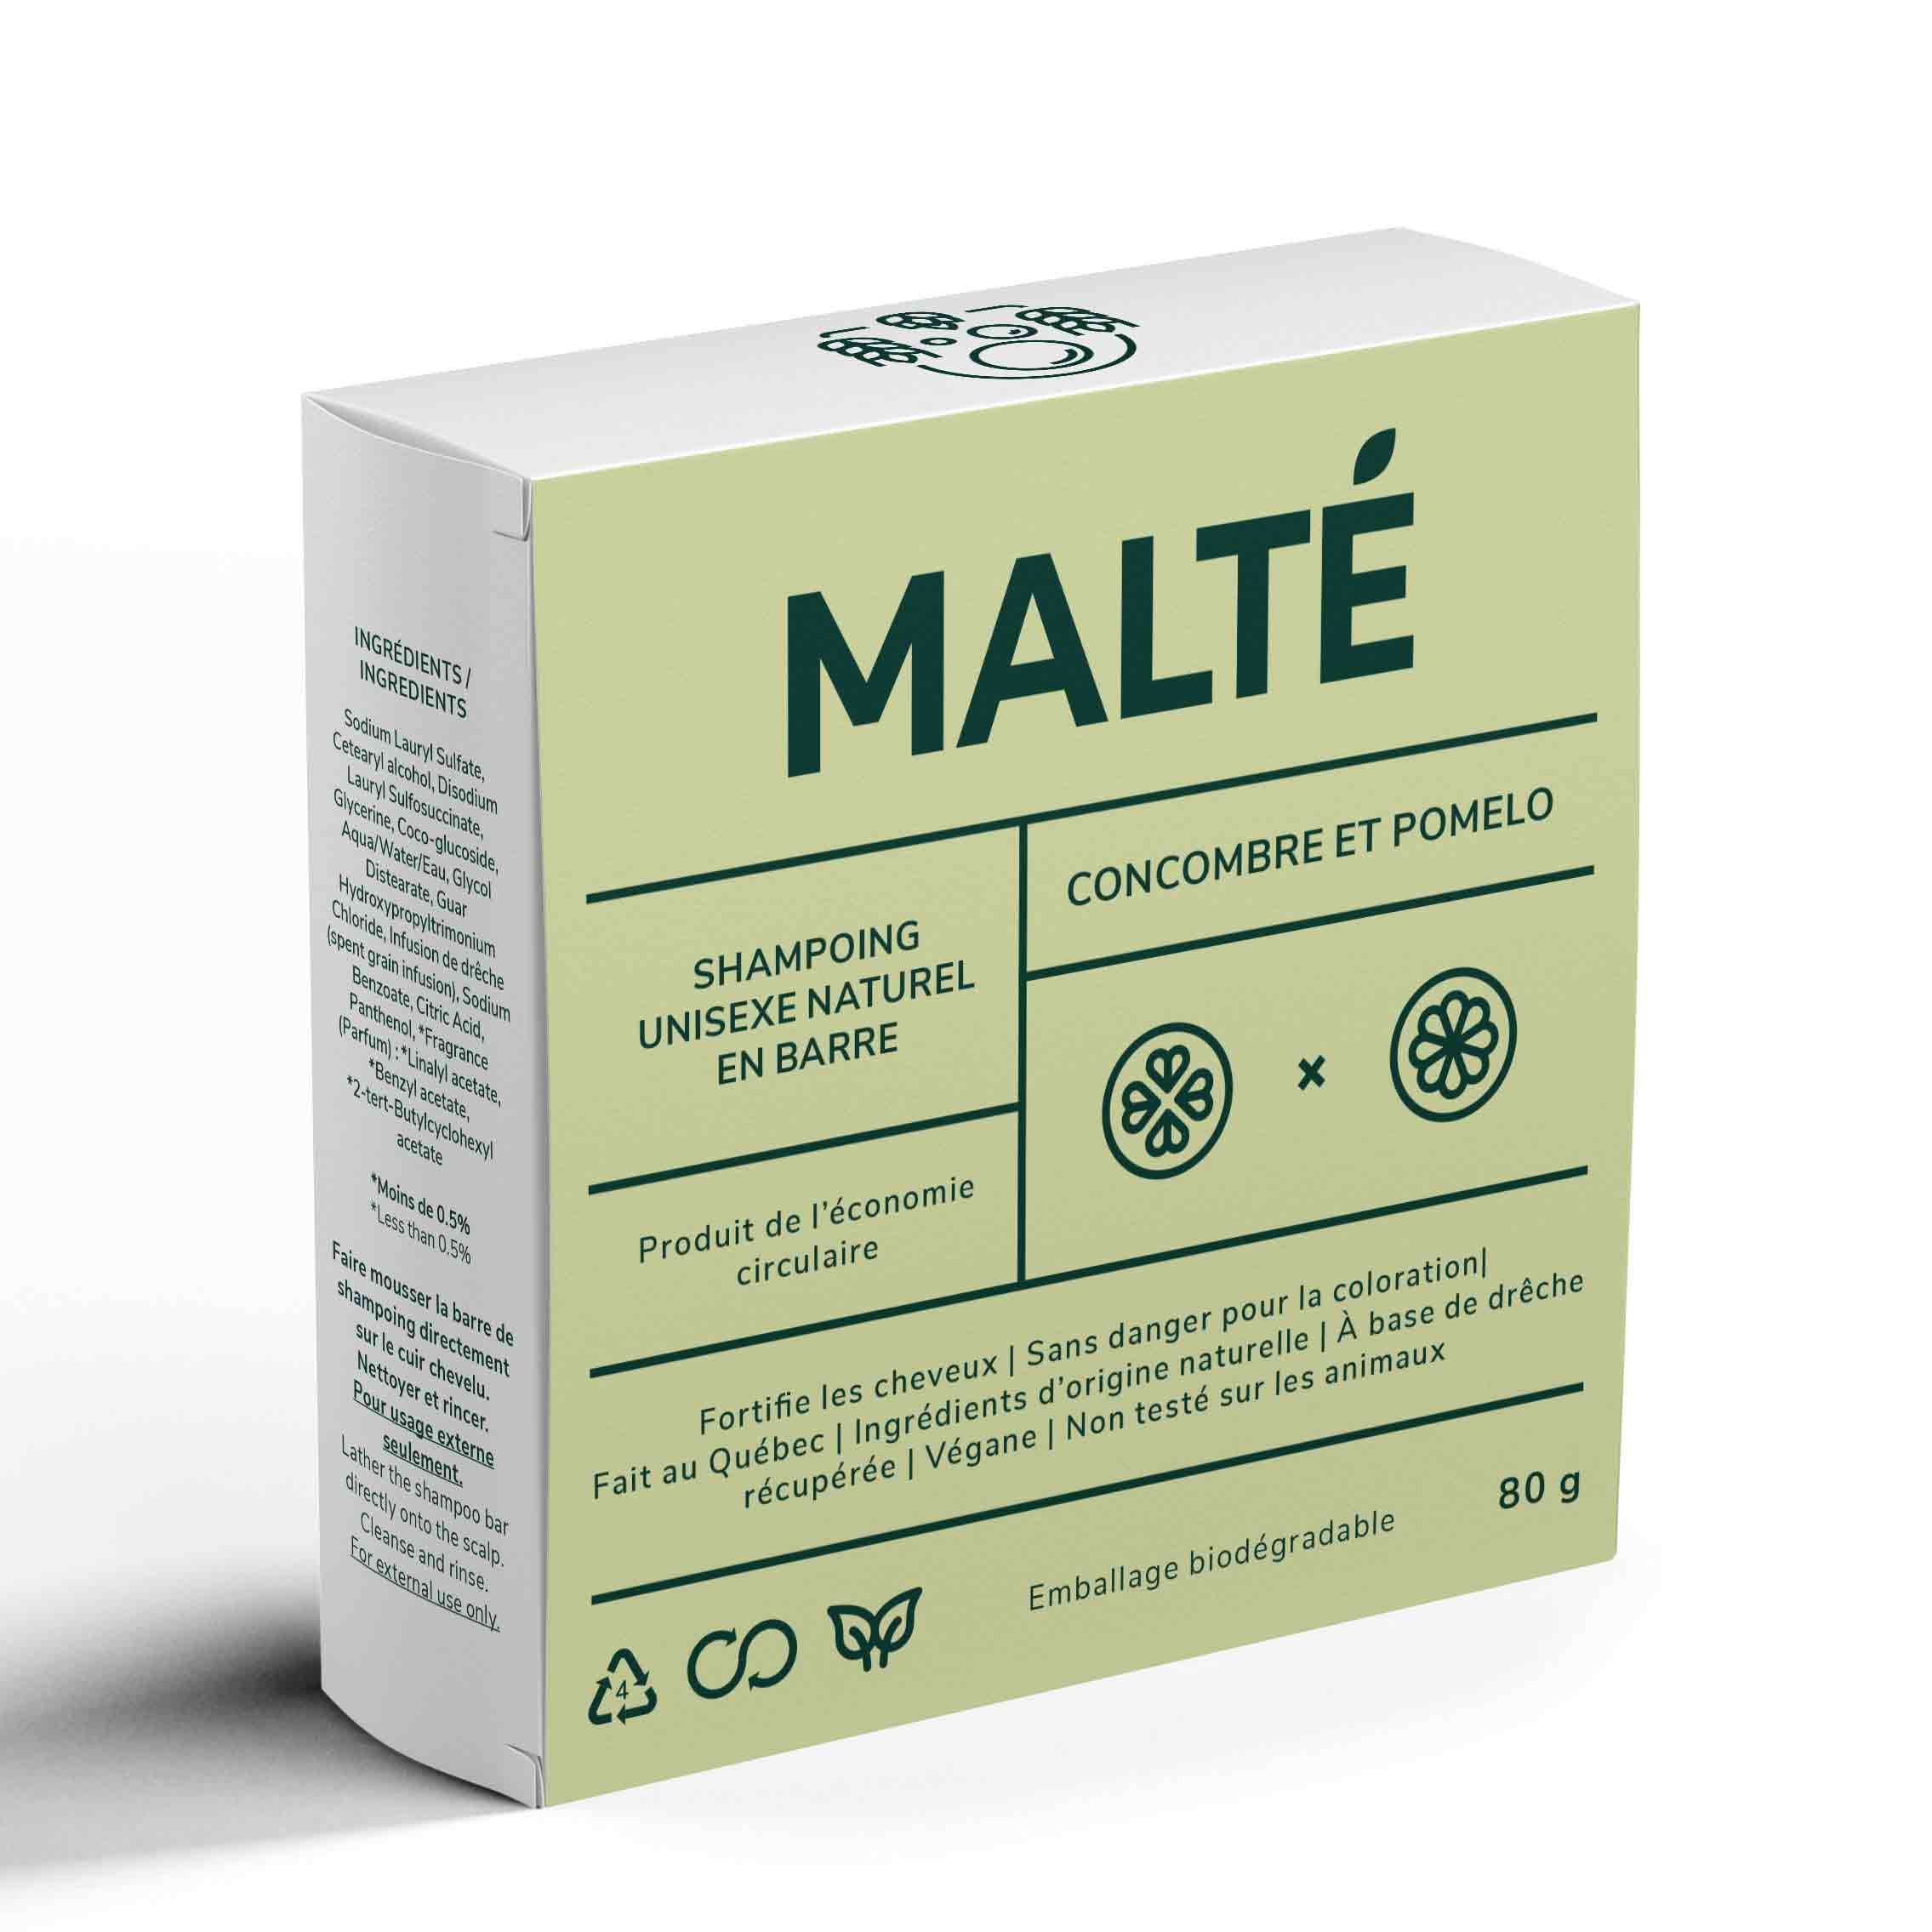 Boîte de carton vert lime avec écriture "Malté. Shampoing unisexe naturel en barre. Concombre et pomelo. À base de drêche." Fond blanc.